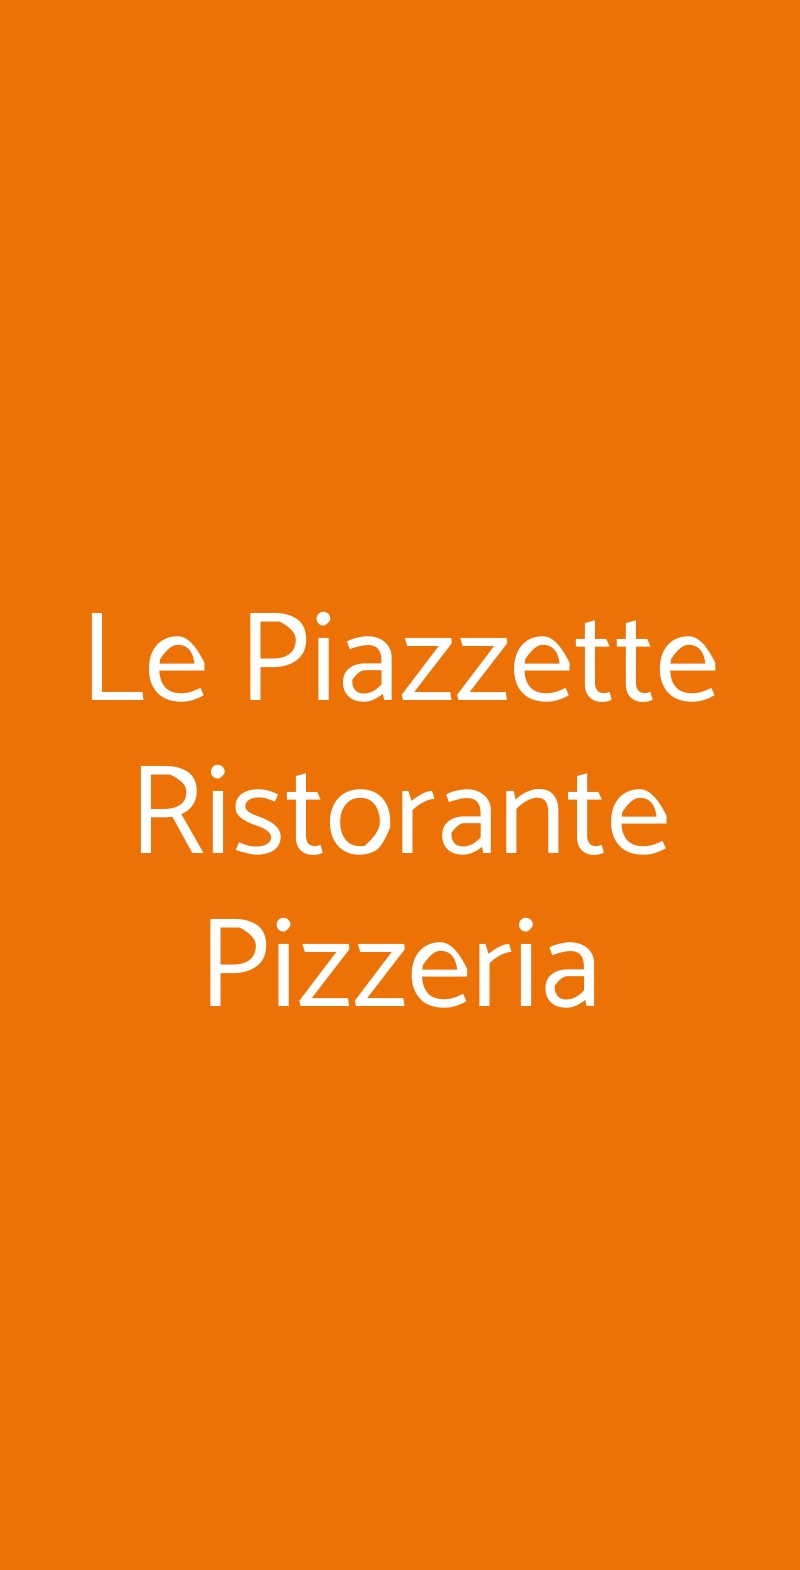 Le Piazzette Ristorante Pizzeria Albano Laziale menù 1 pagina